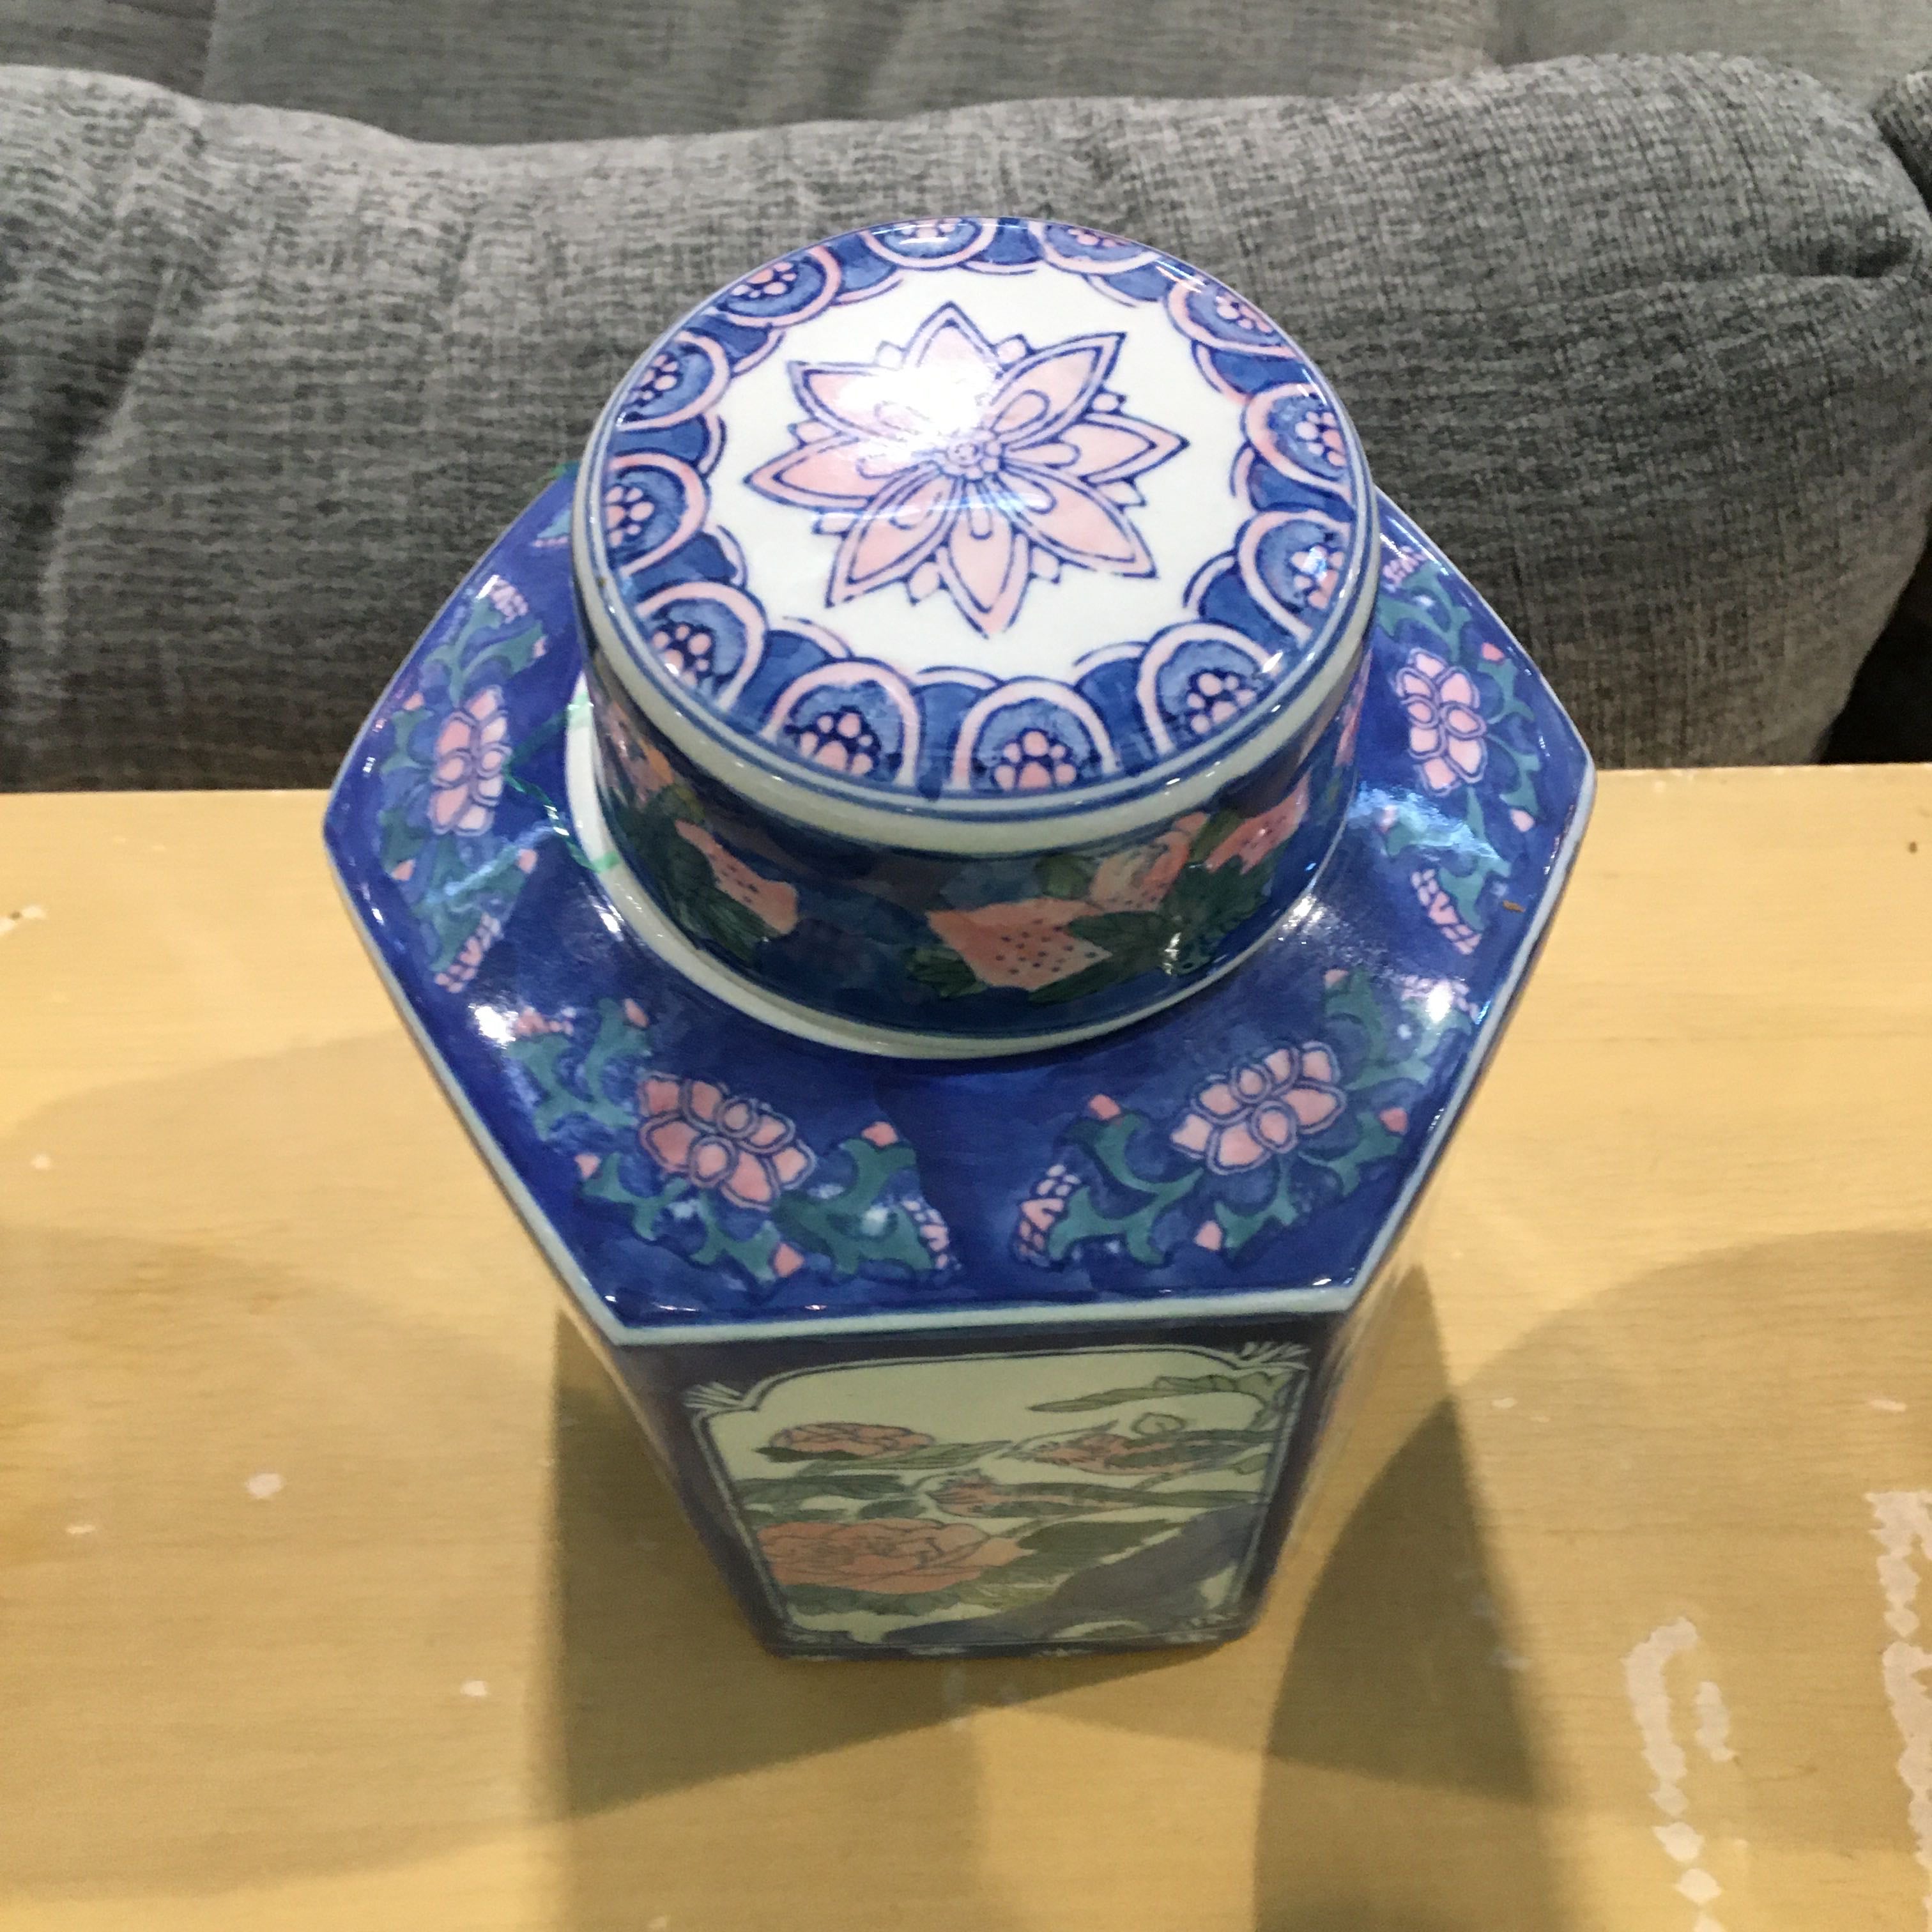 7"x 10" Octagonal Shaped Porcelain with Lid Ginger Jar